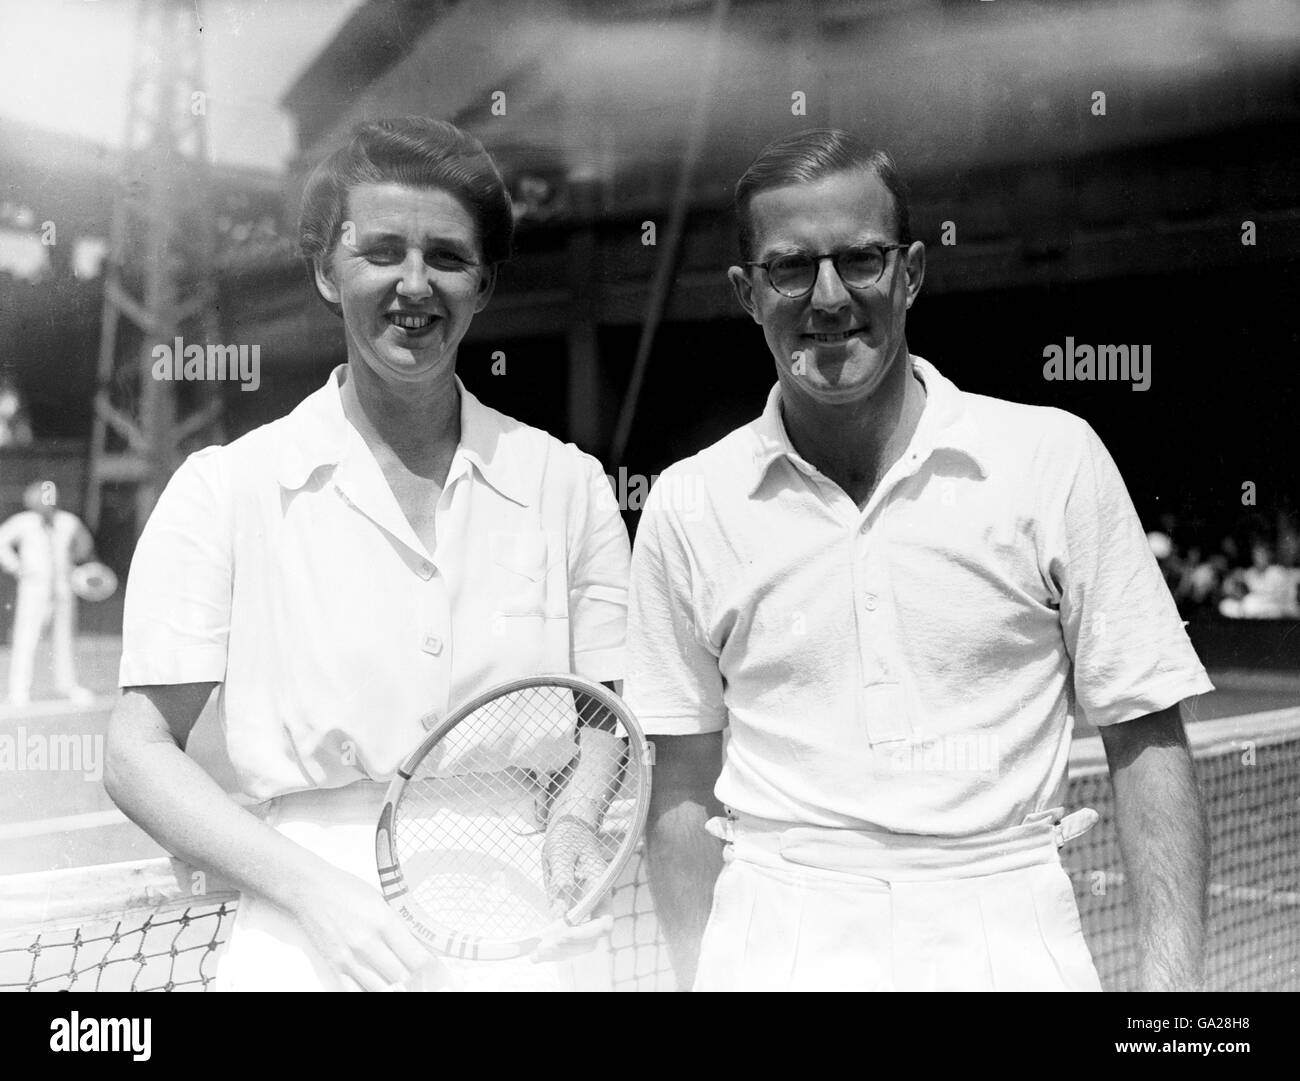 (L-R) Mixed raddoppia i partner Nancy Wynne Bolton e Colin Long, che hanno raggiunto la finale di Wimbledon 1947 insieme Foto Stock